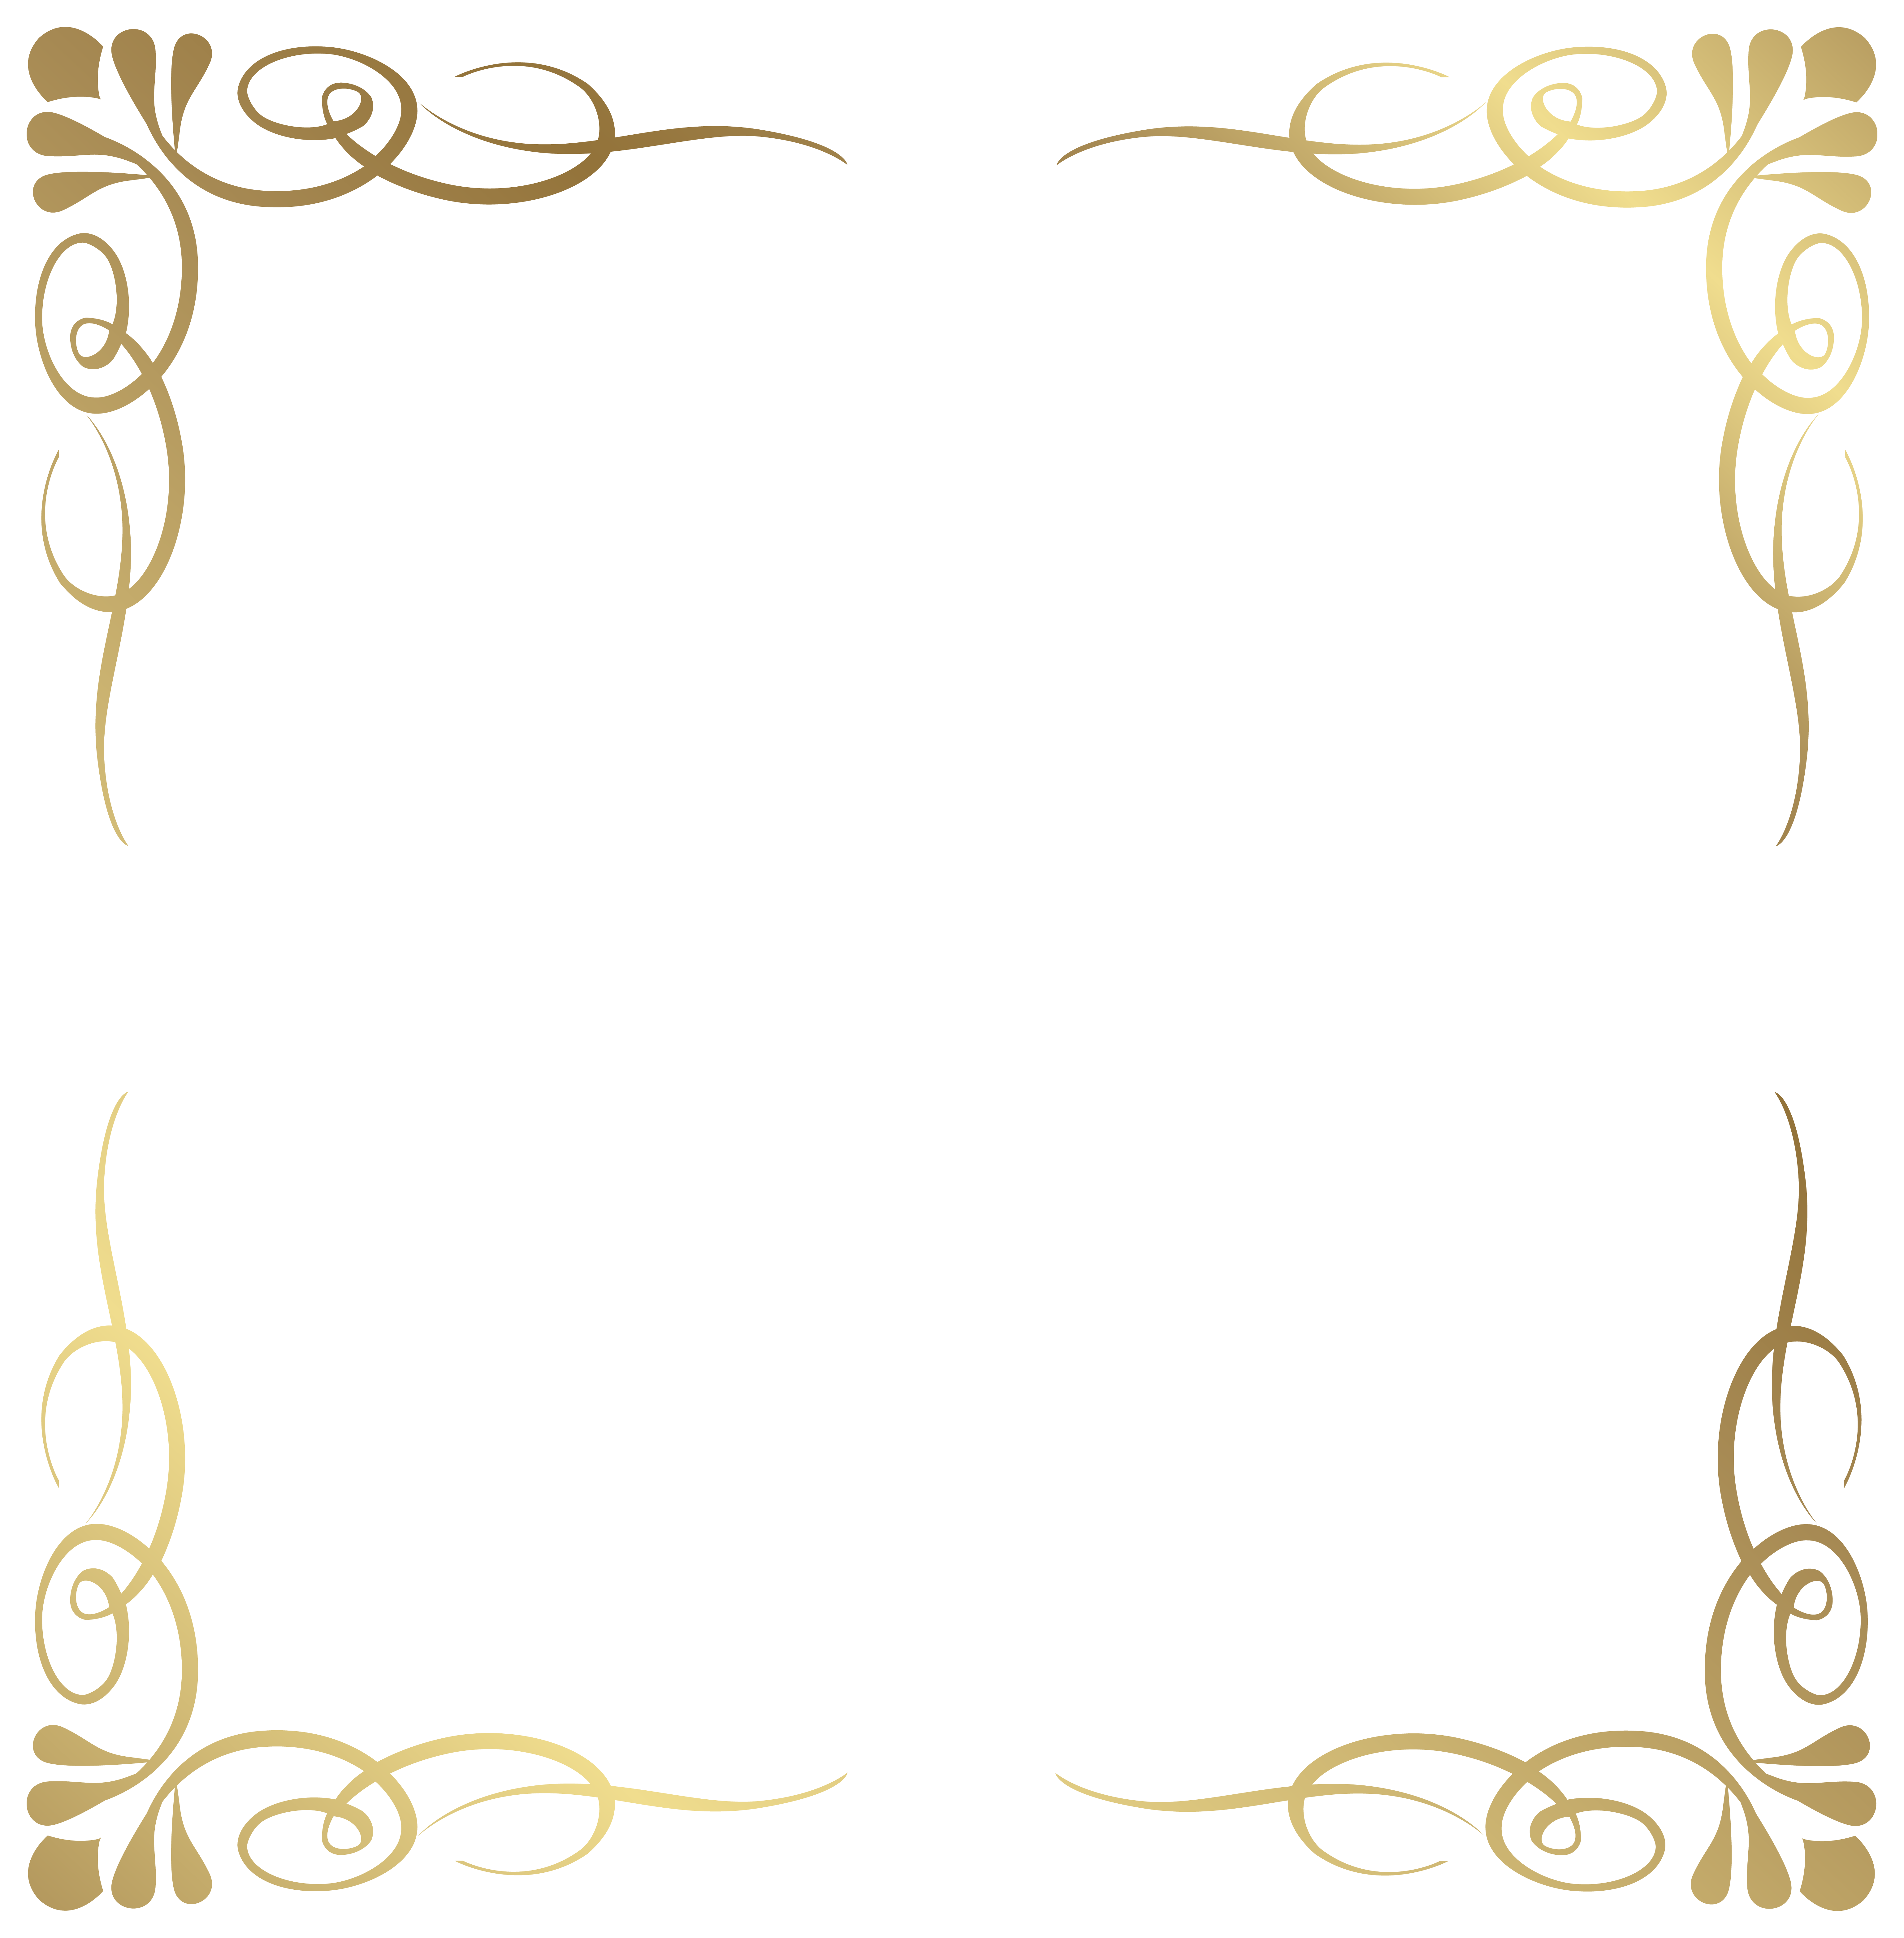 Ornate border png. Transparent decorative frame image